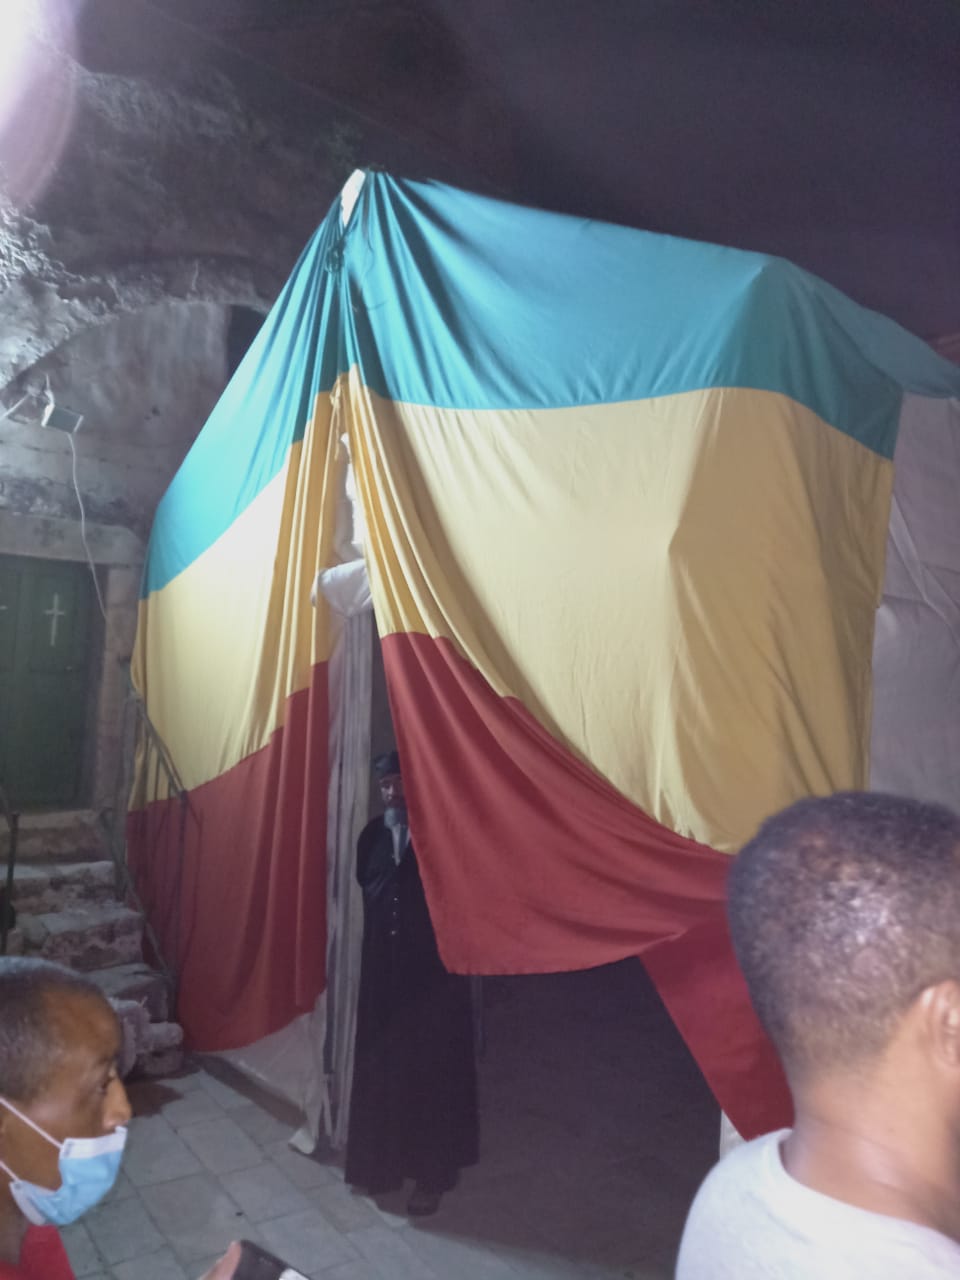 Ethiopian flag illegally flown at Coptic monastery